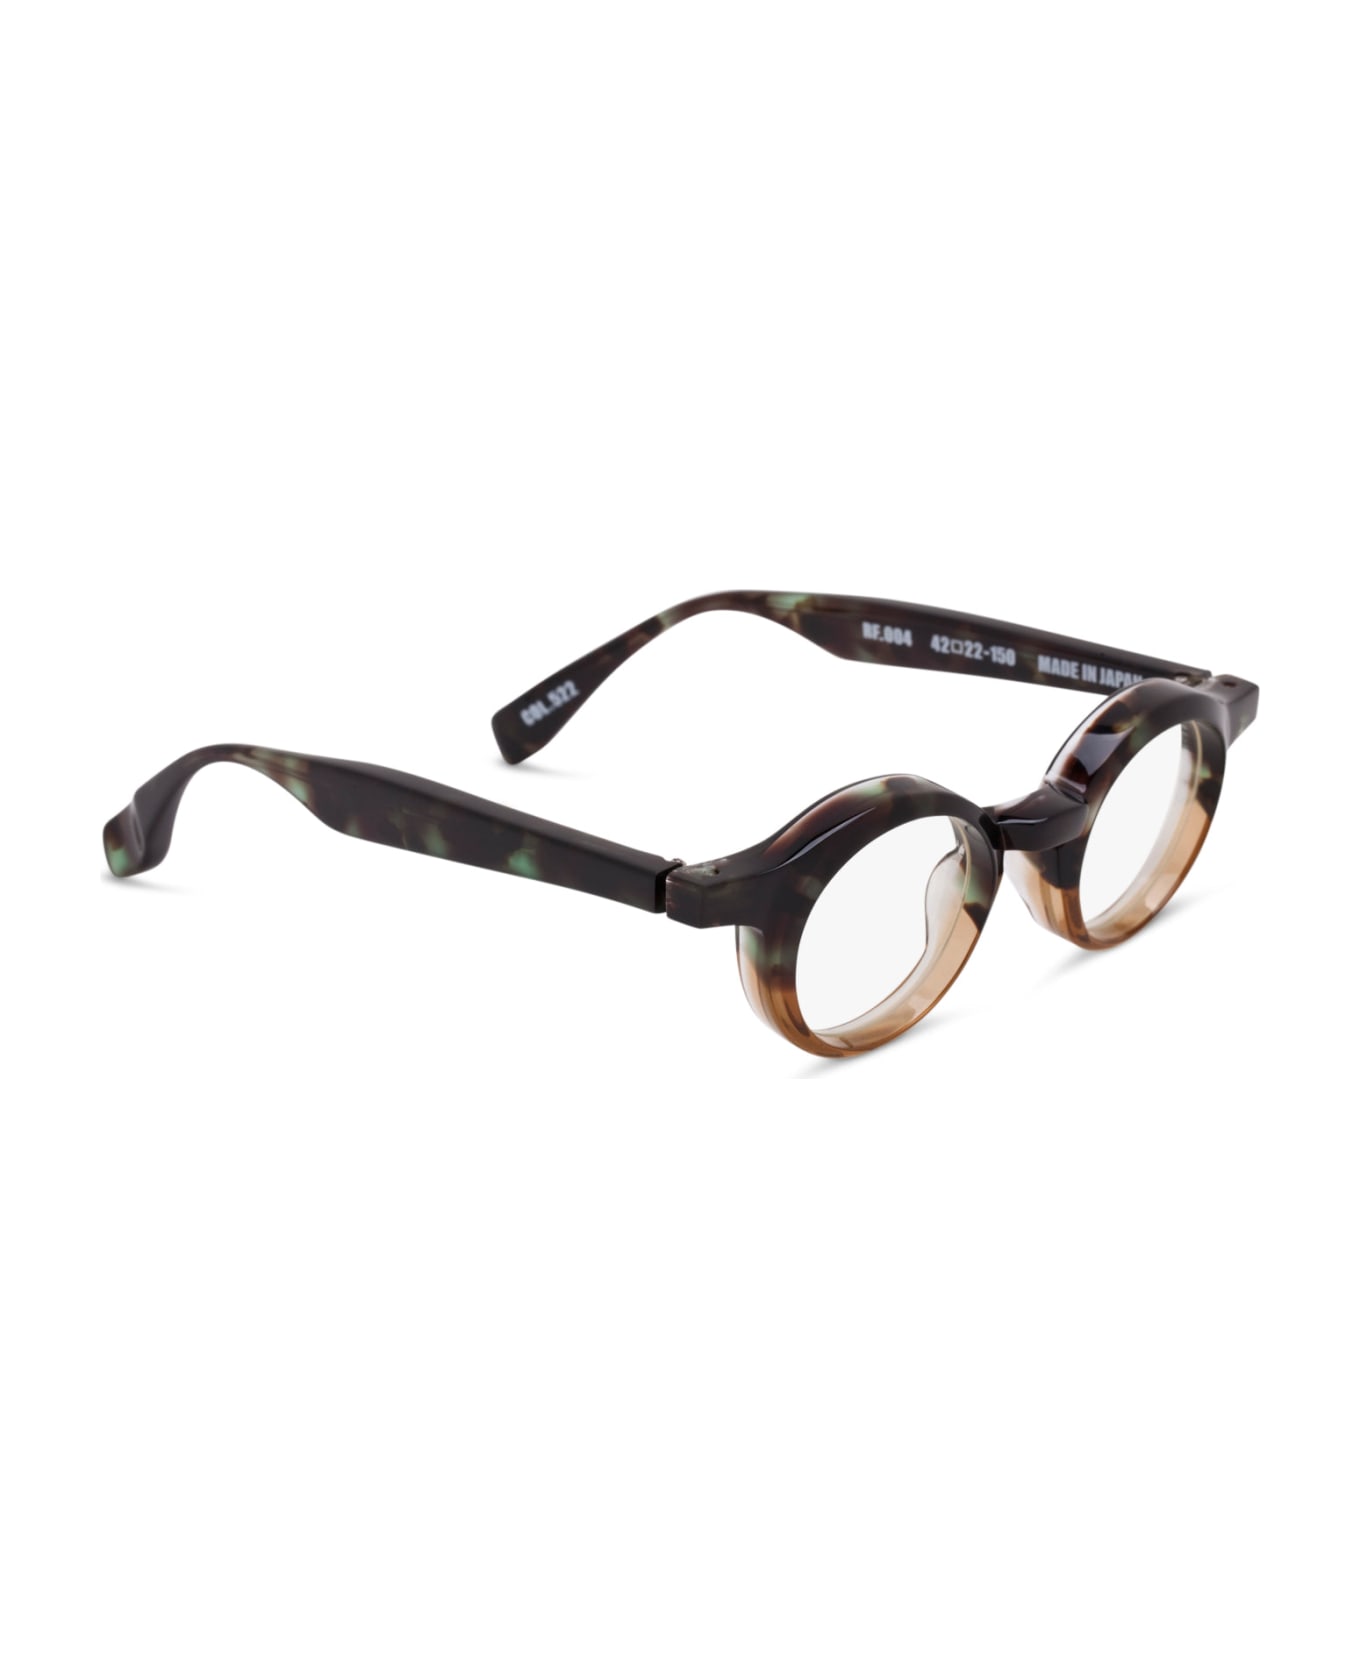 FACTORY900 Rf 004-522 Glasses - green tortoise/honey brown